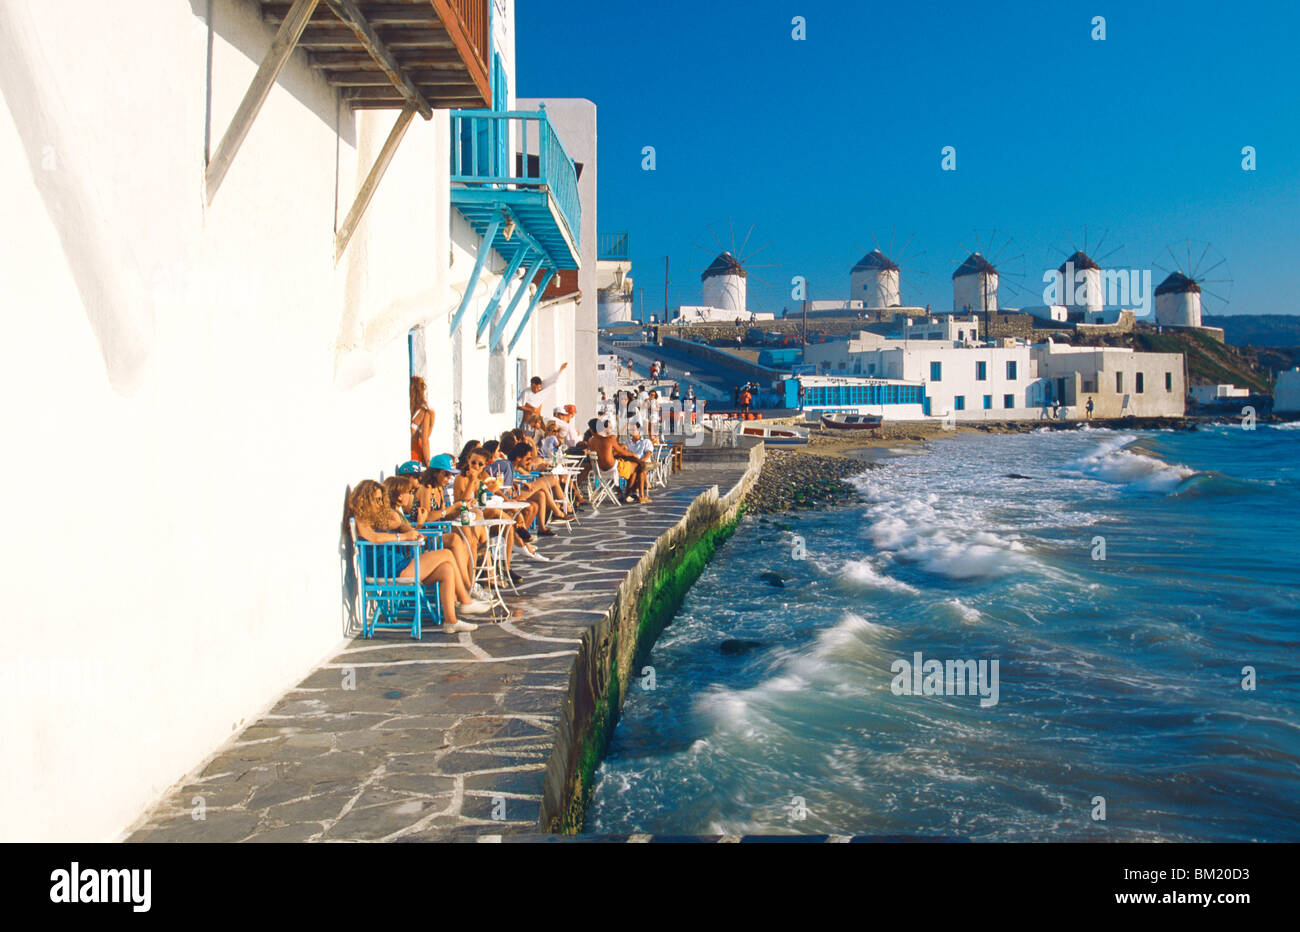 La petite Venise, Mykonos, Cyclades, îles grecques, Grèce, Europe Banque D'Images